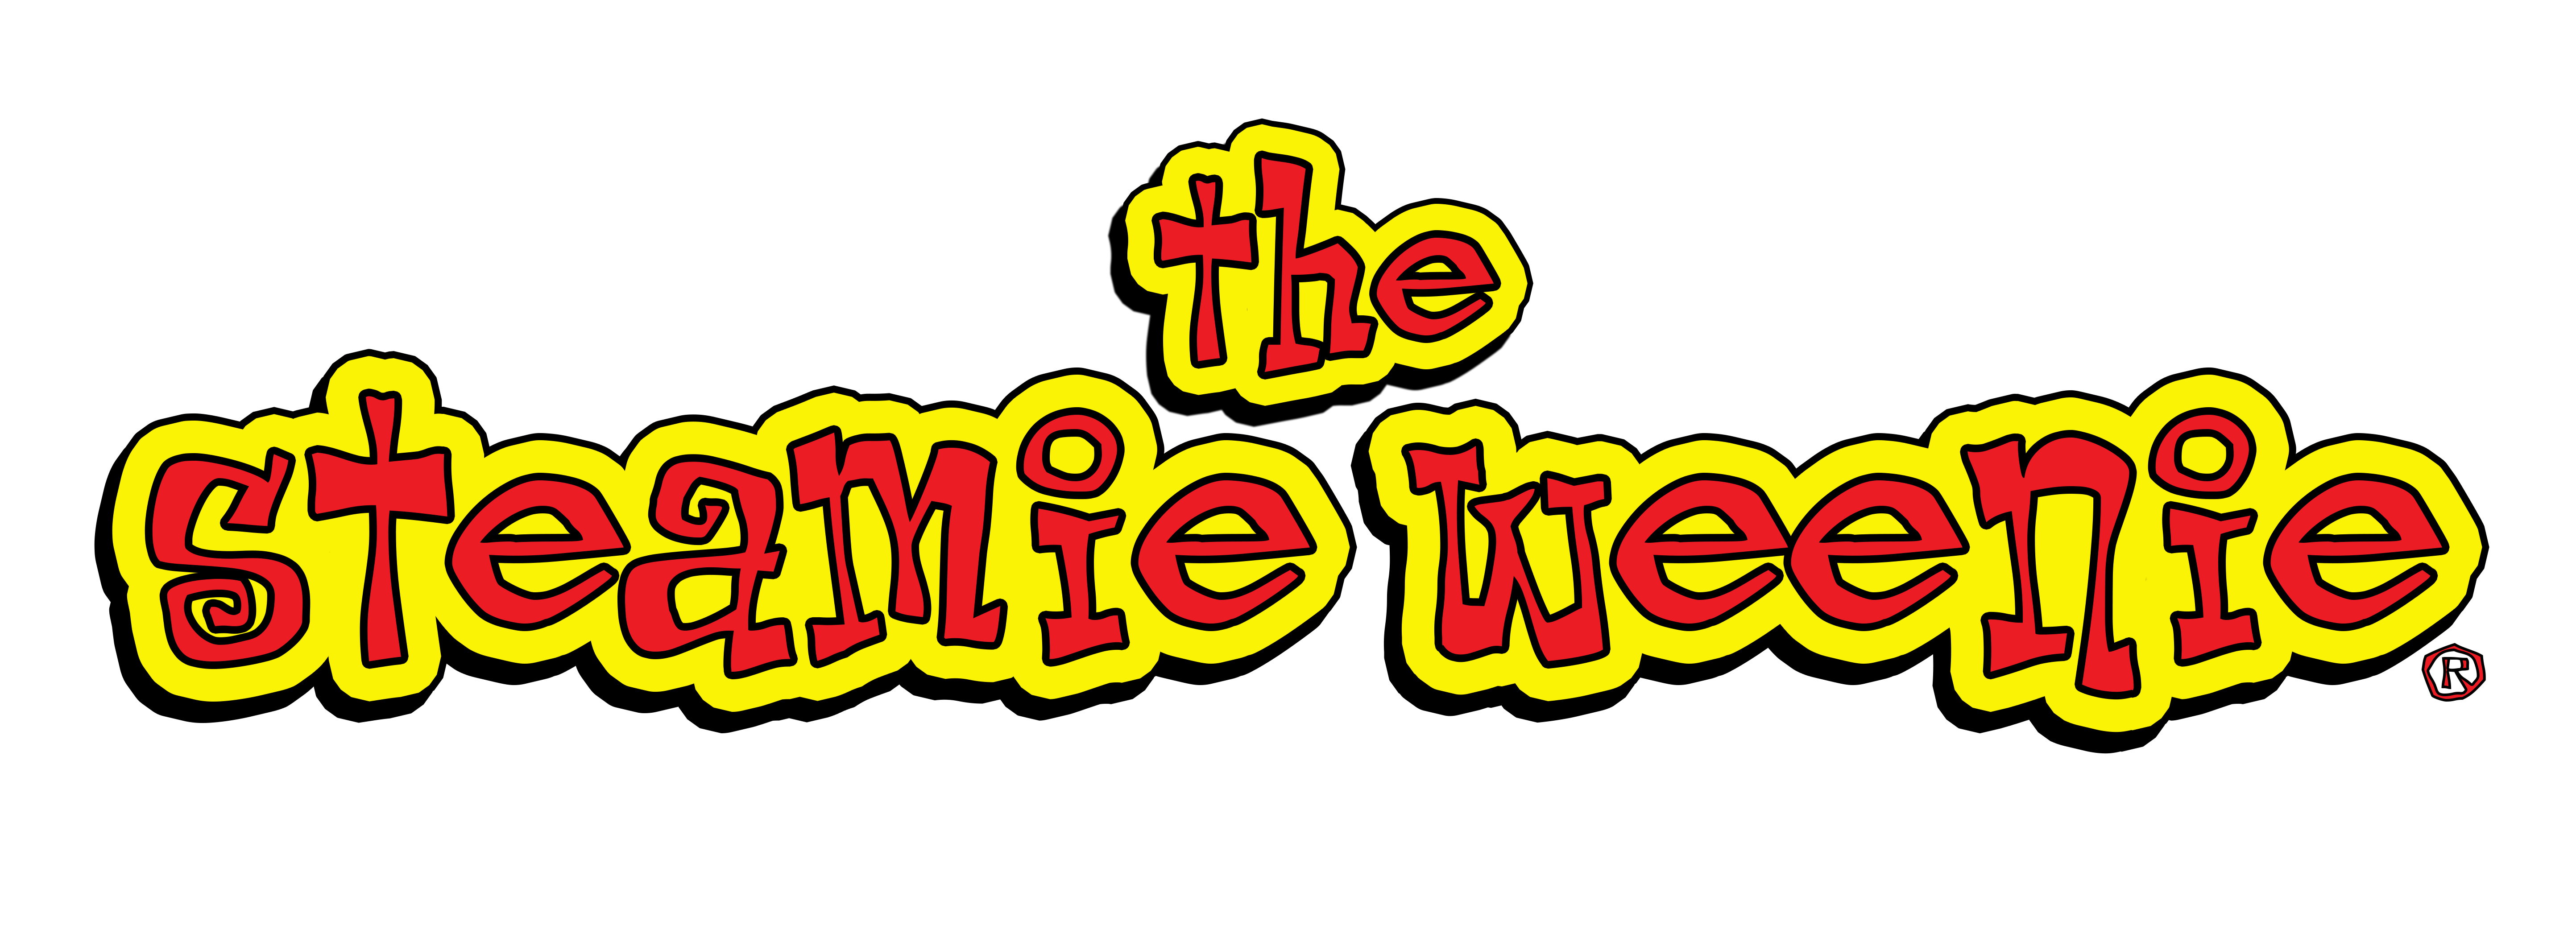 The Steamie Weenie